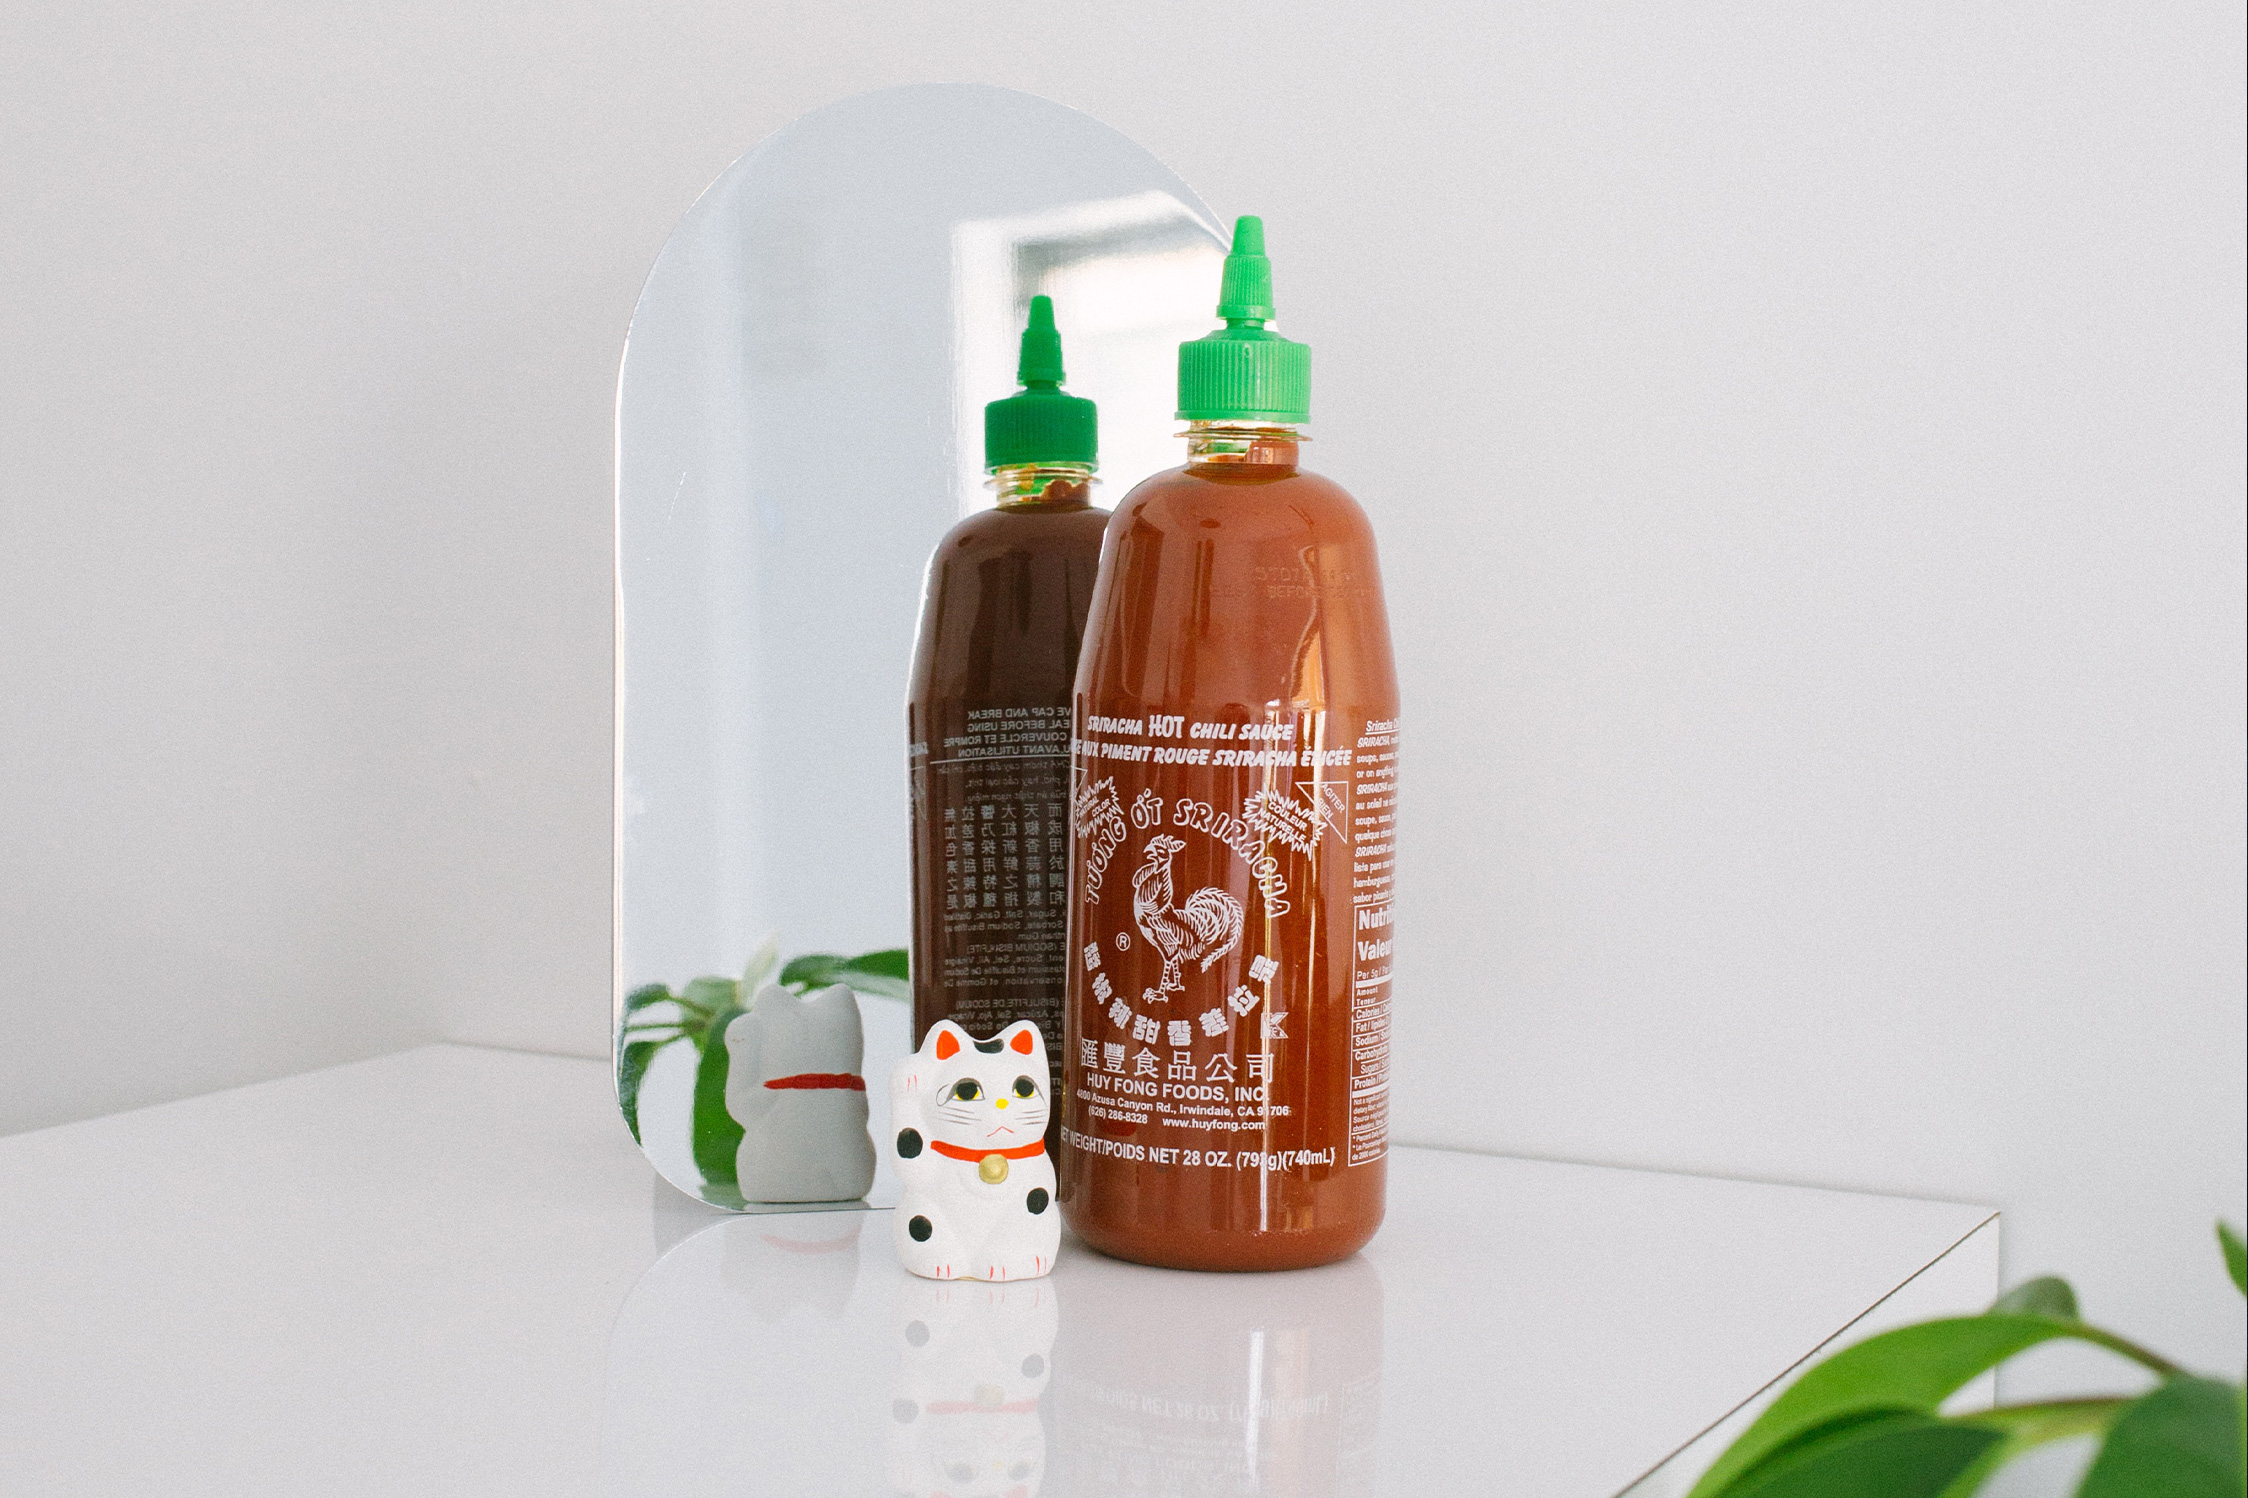 Huy Fong Foods Confirms Sriracha Shortage